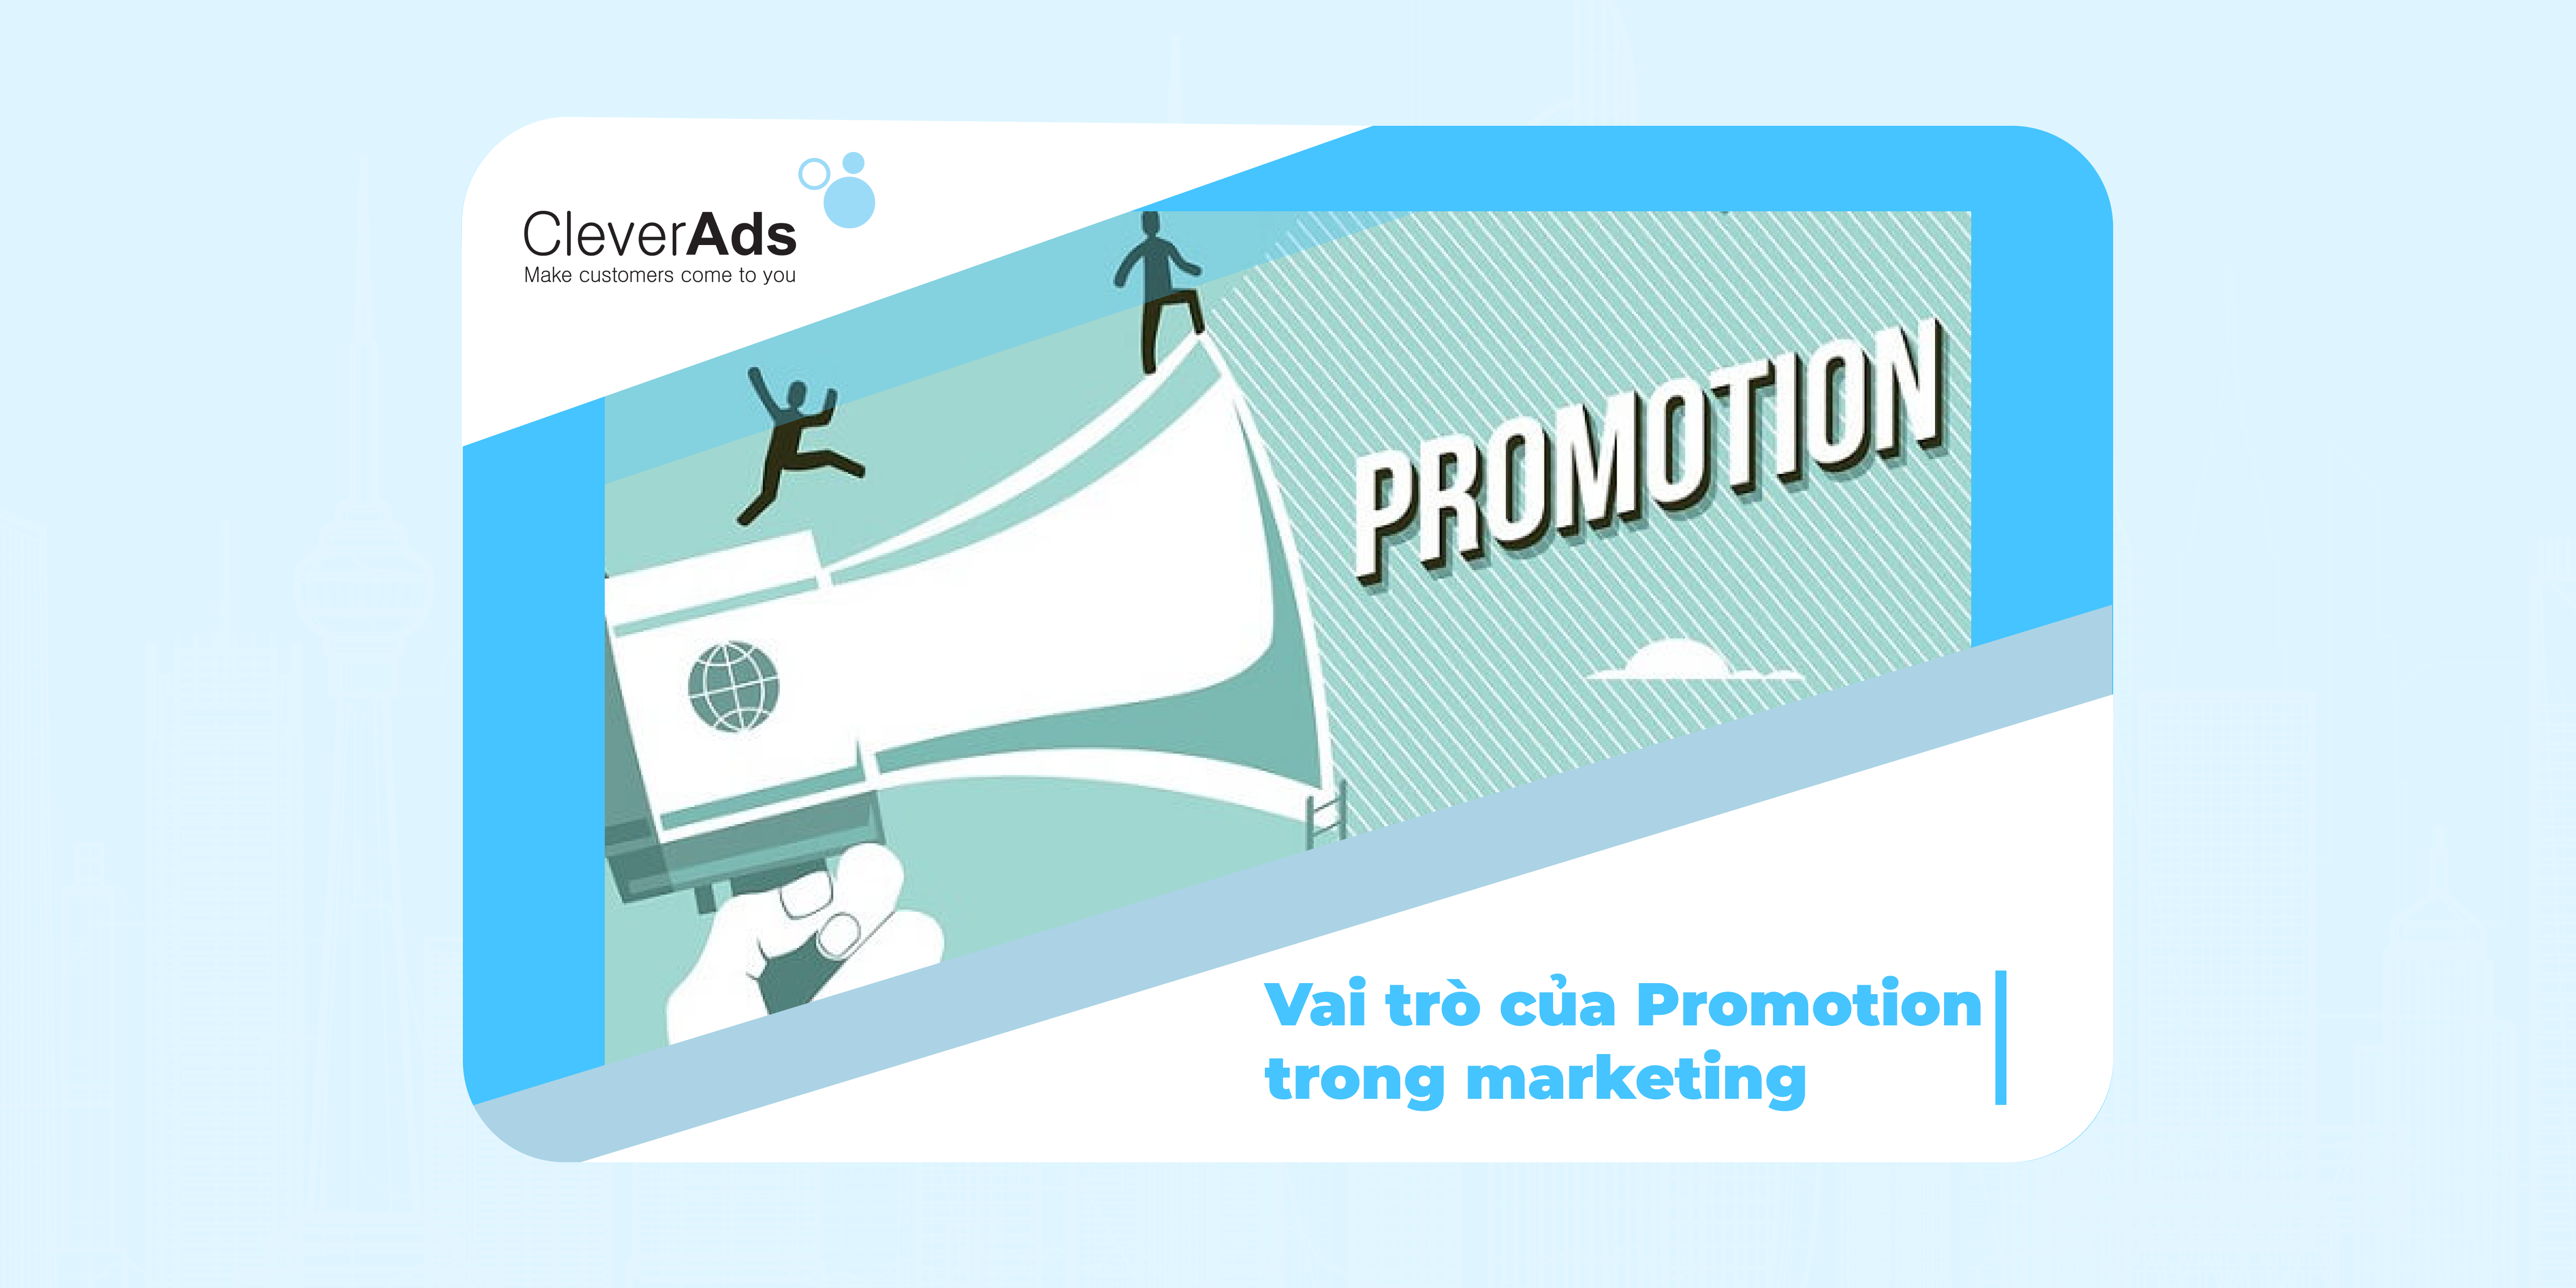 Vai trò của Promotion trong marketing